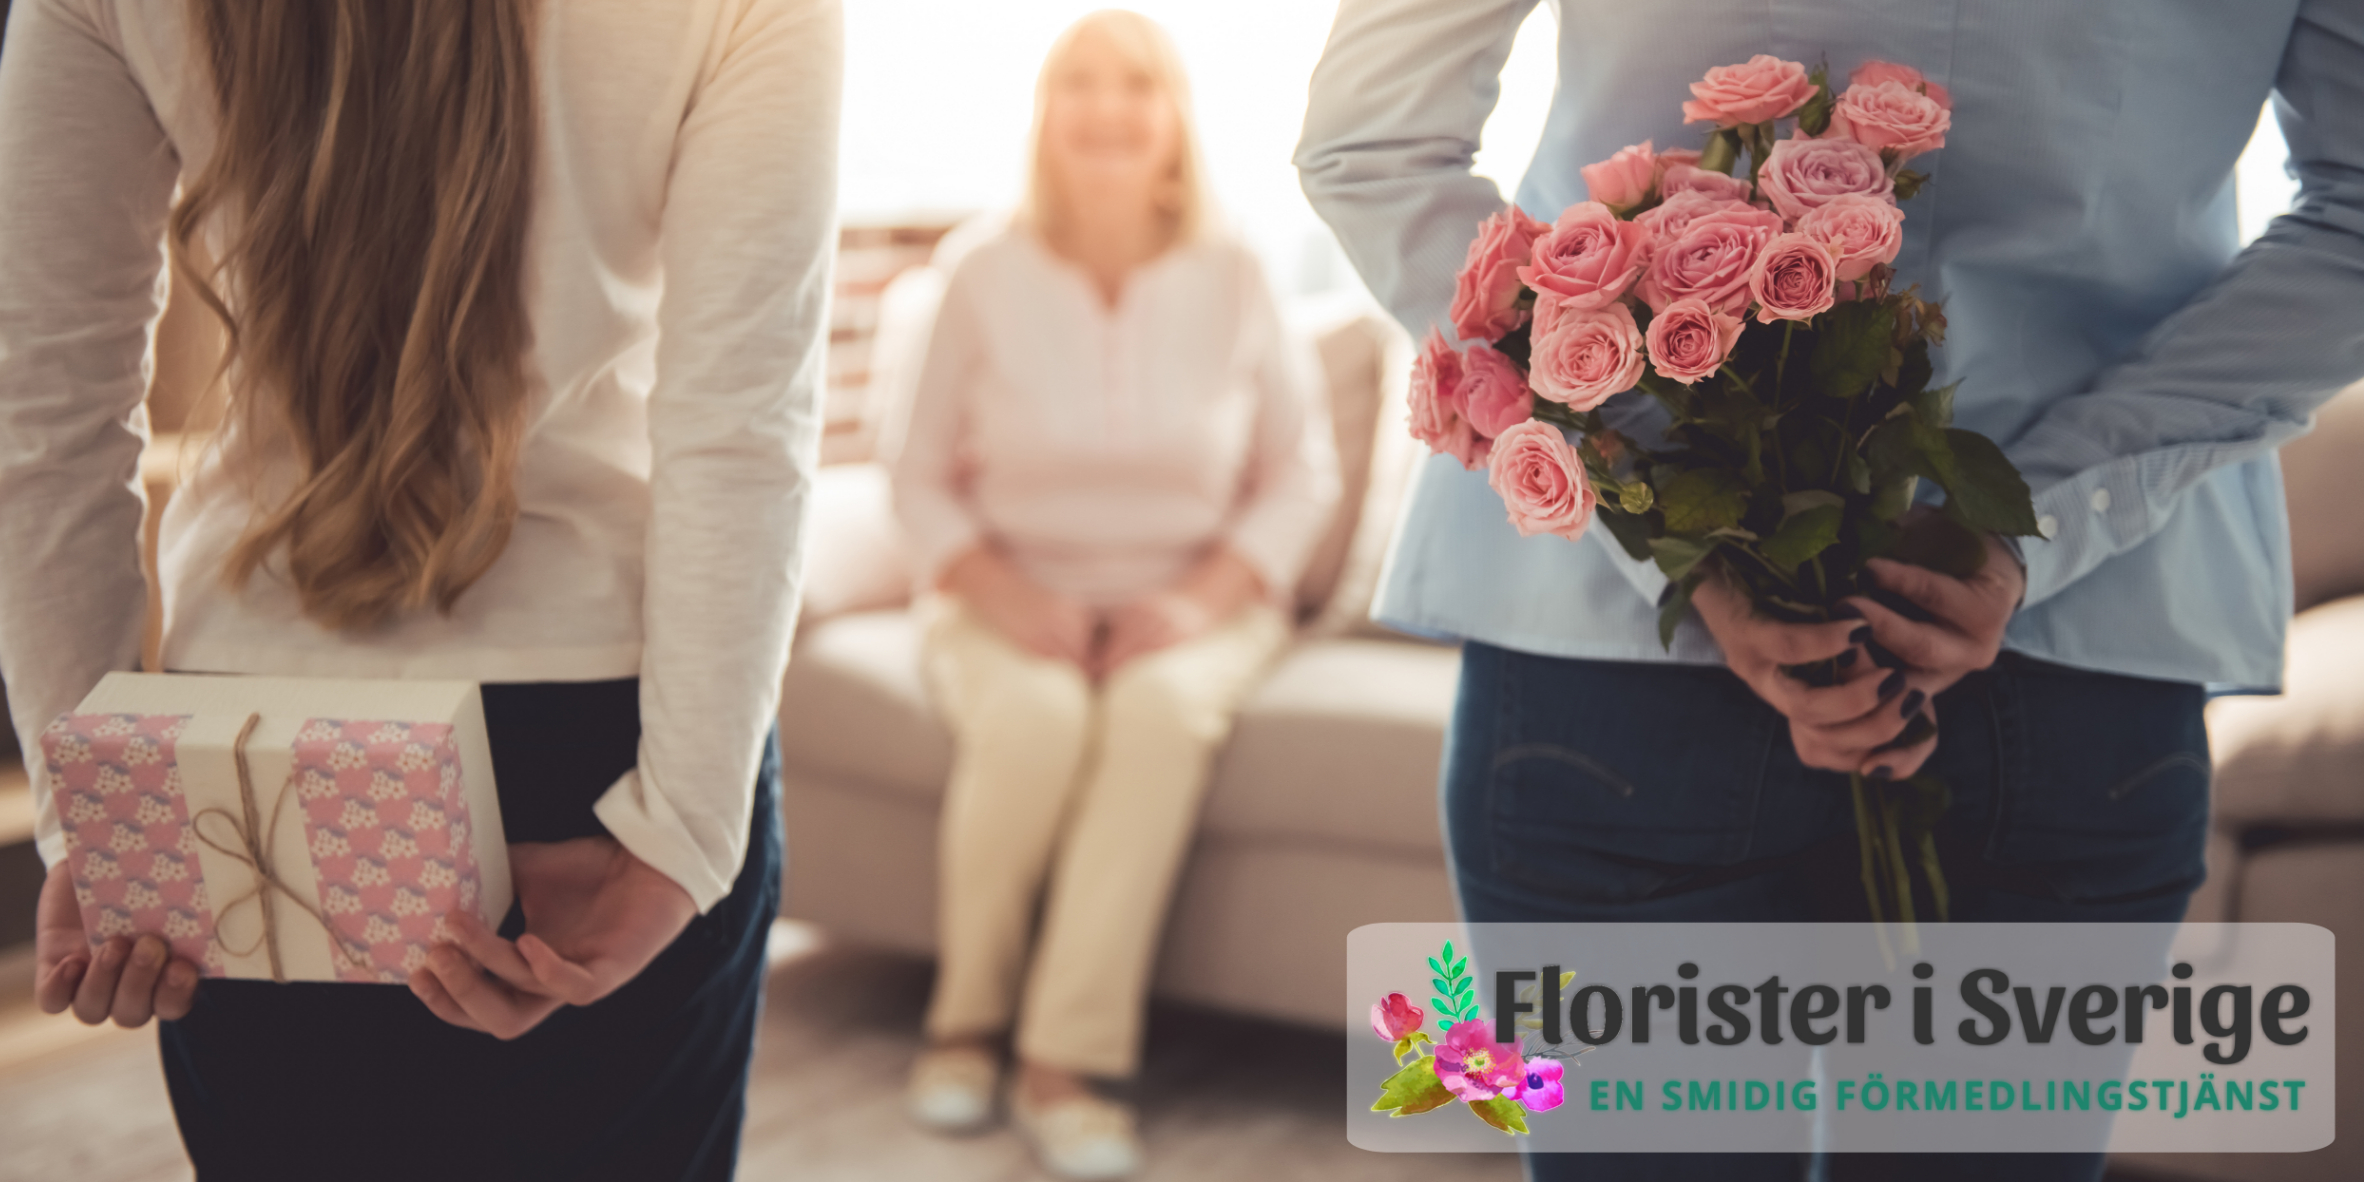 Skicka blomsterbud, chokladbud, tvålogram eller nallebud - beställ hos Florister i Sverige!